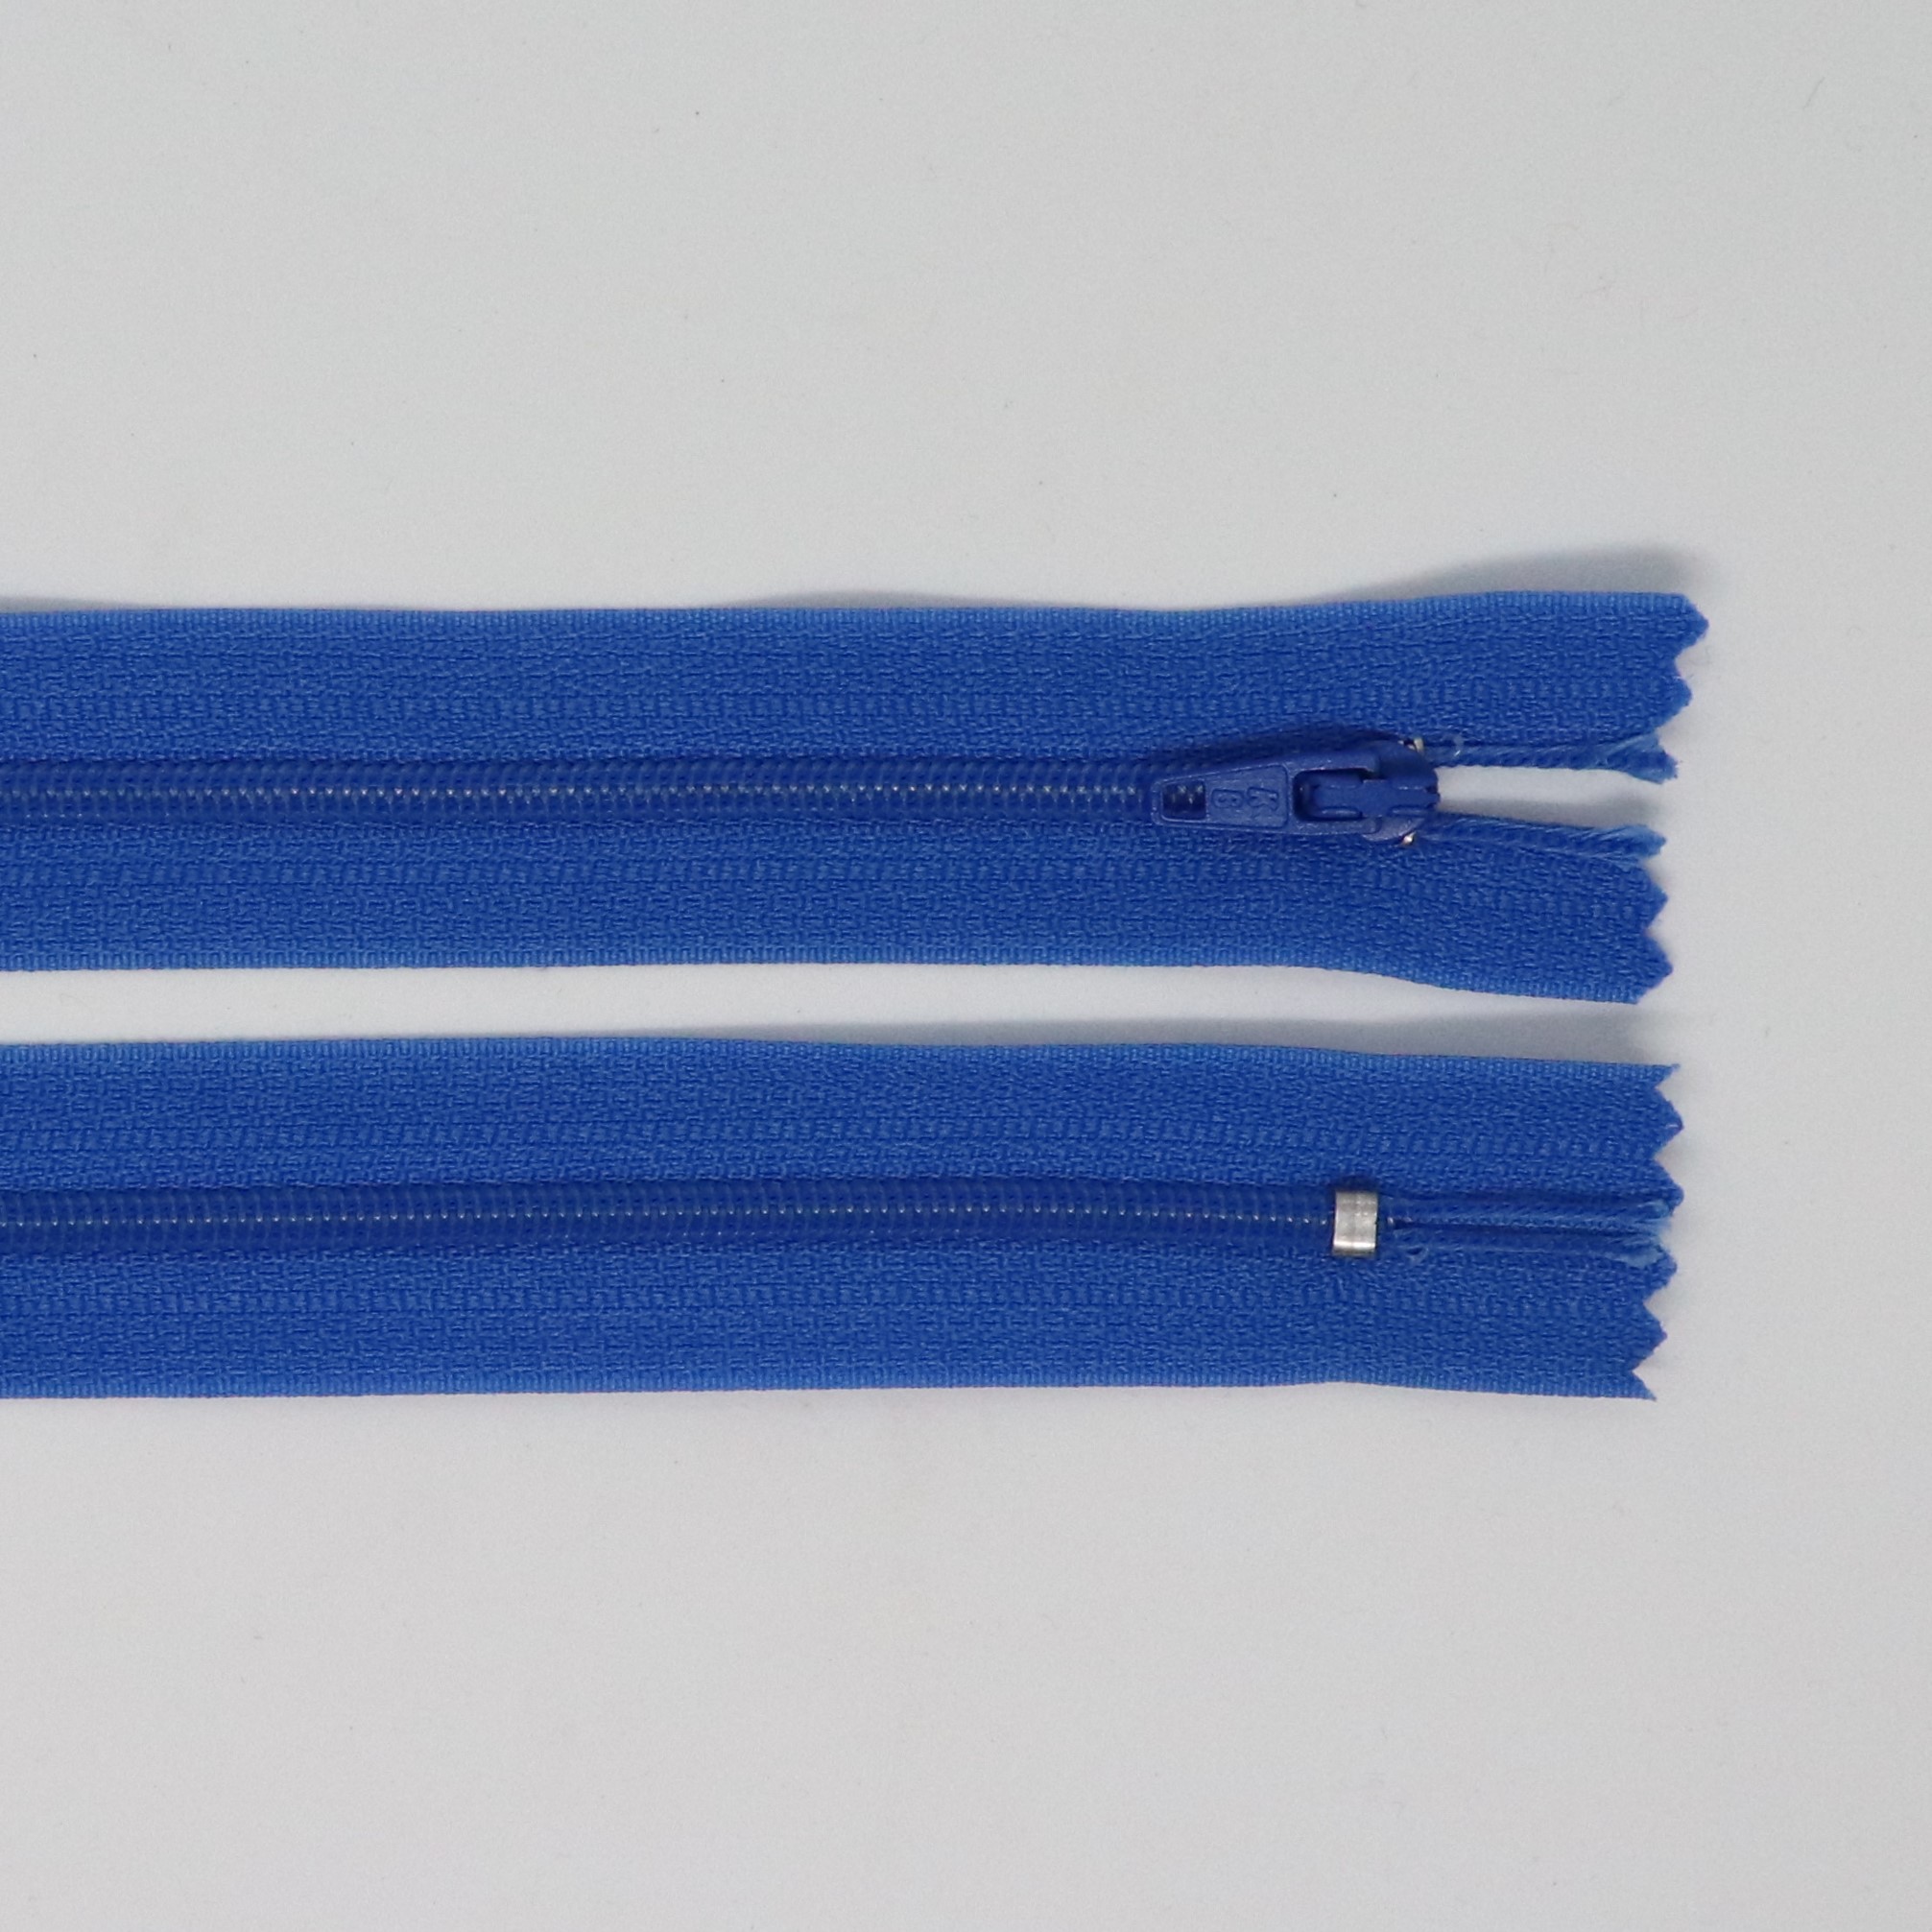 Spirálový zip, šíøe 3 mm, délka 50 cm, modrá - zvìtšit obrázek